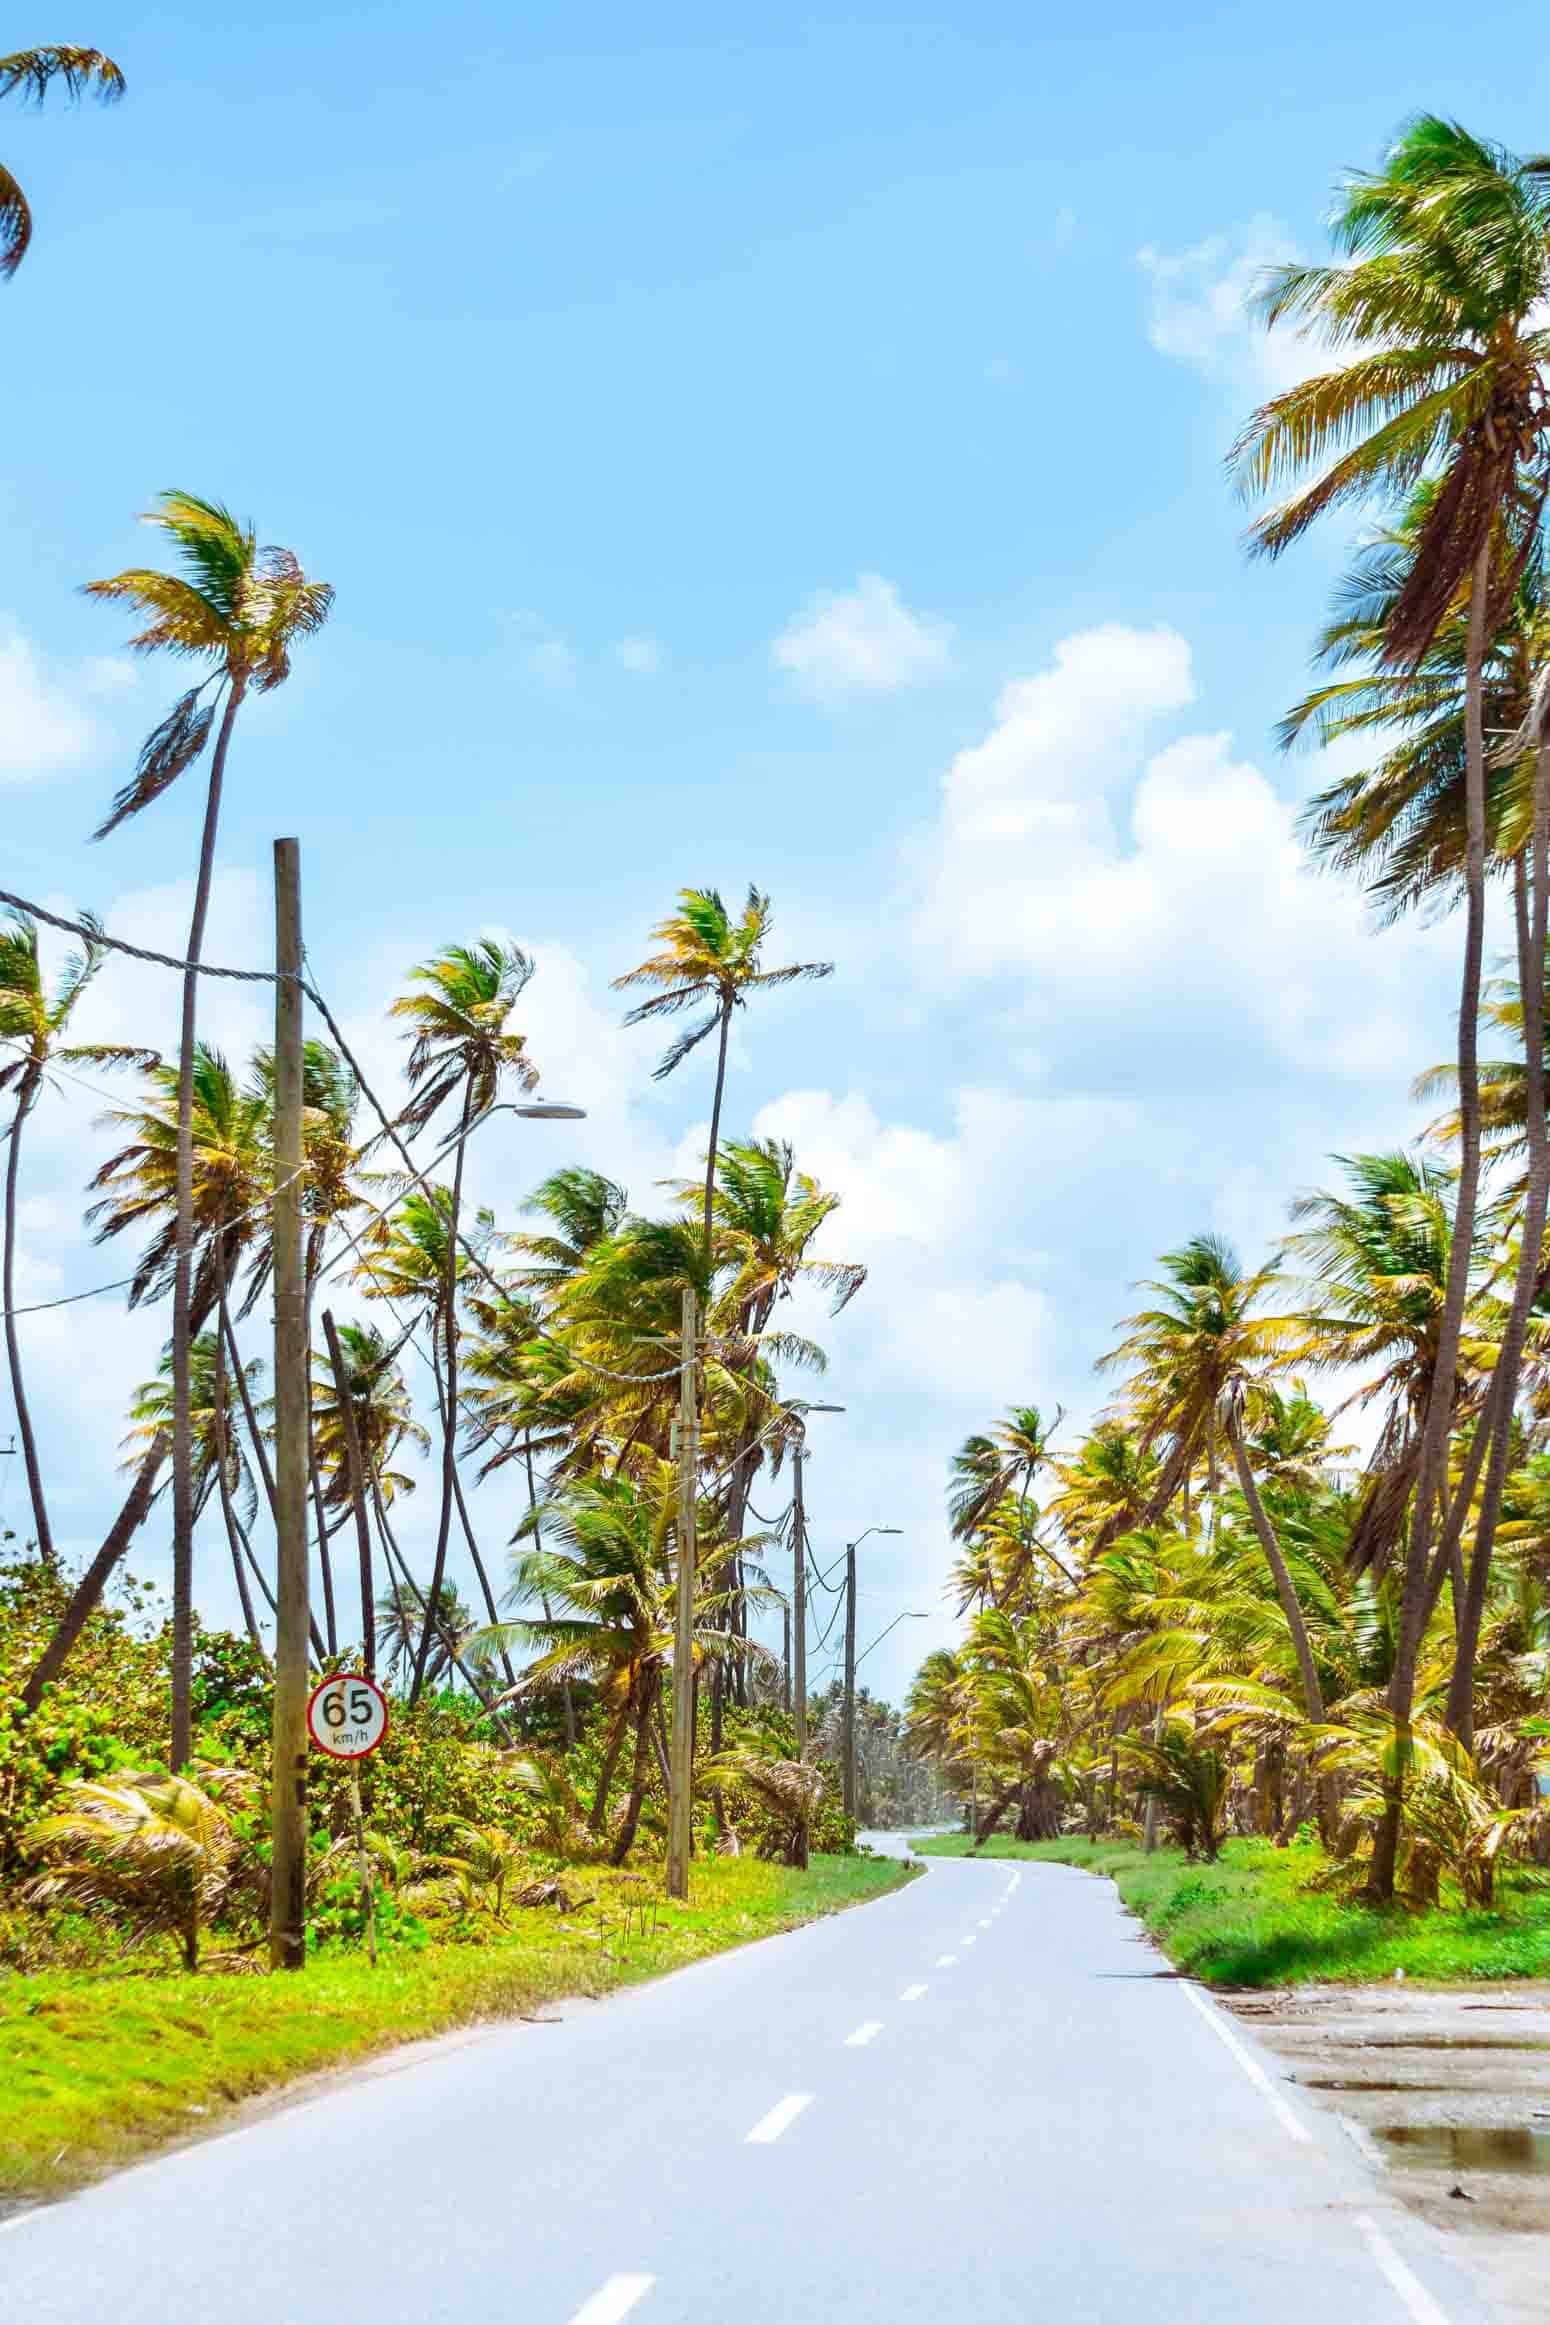 Palm tress along a road in Mayaro, Trinidad and Tobago